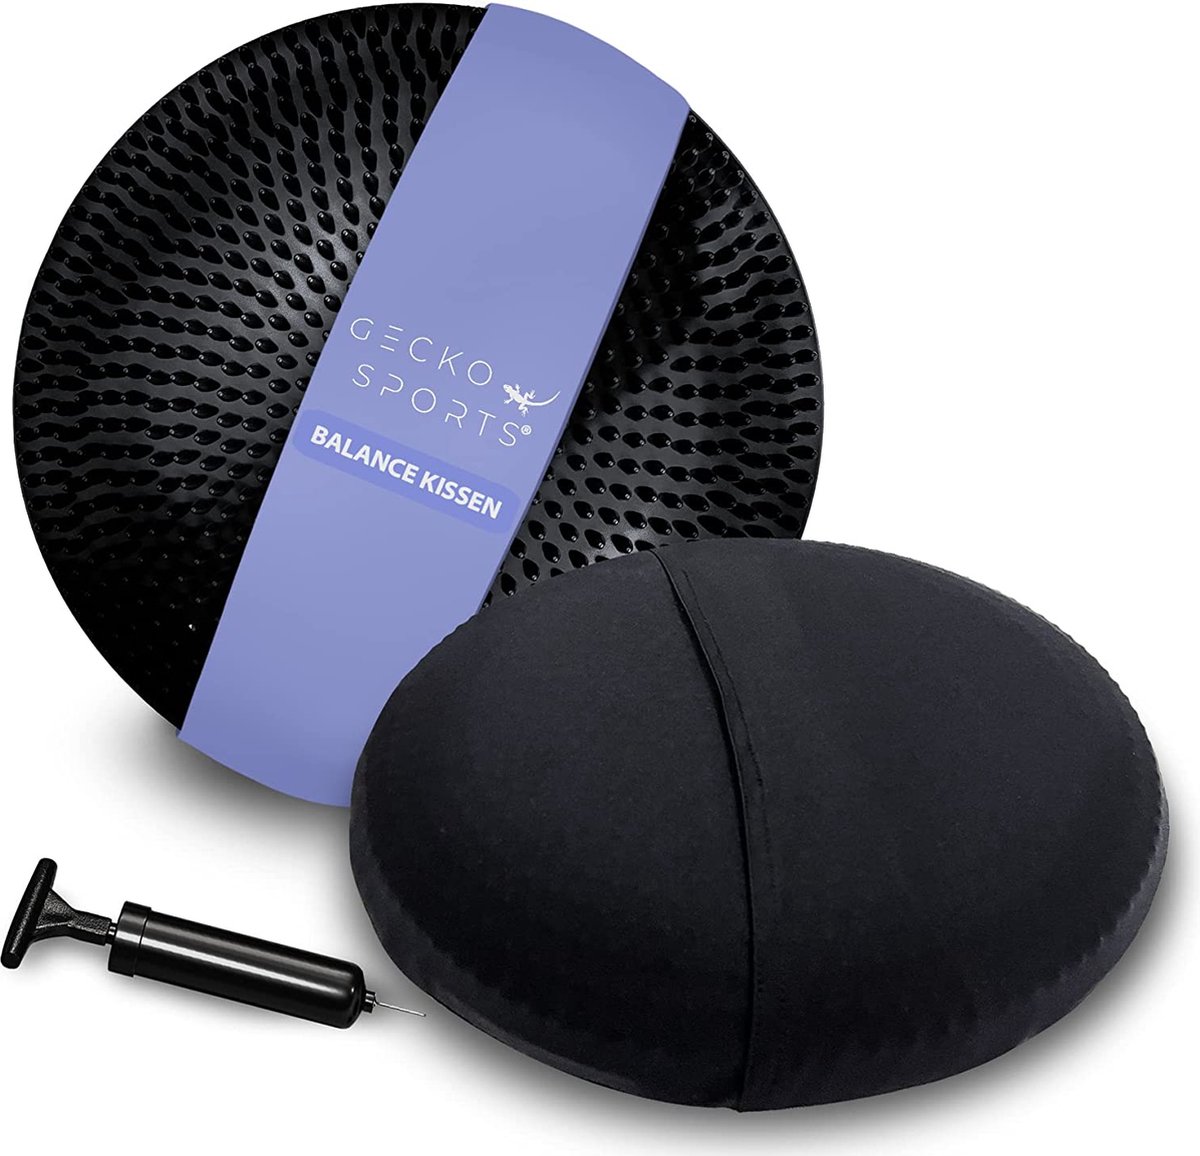 Balanskussen met hoes in zwart, 33 cm, met pomp, bolzitkussen, balanskussen - kussen met onderhoudsvriendelijke, wasbare, elastische hoes voor een comfortabelere zitervaring